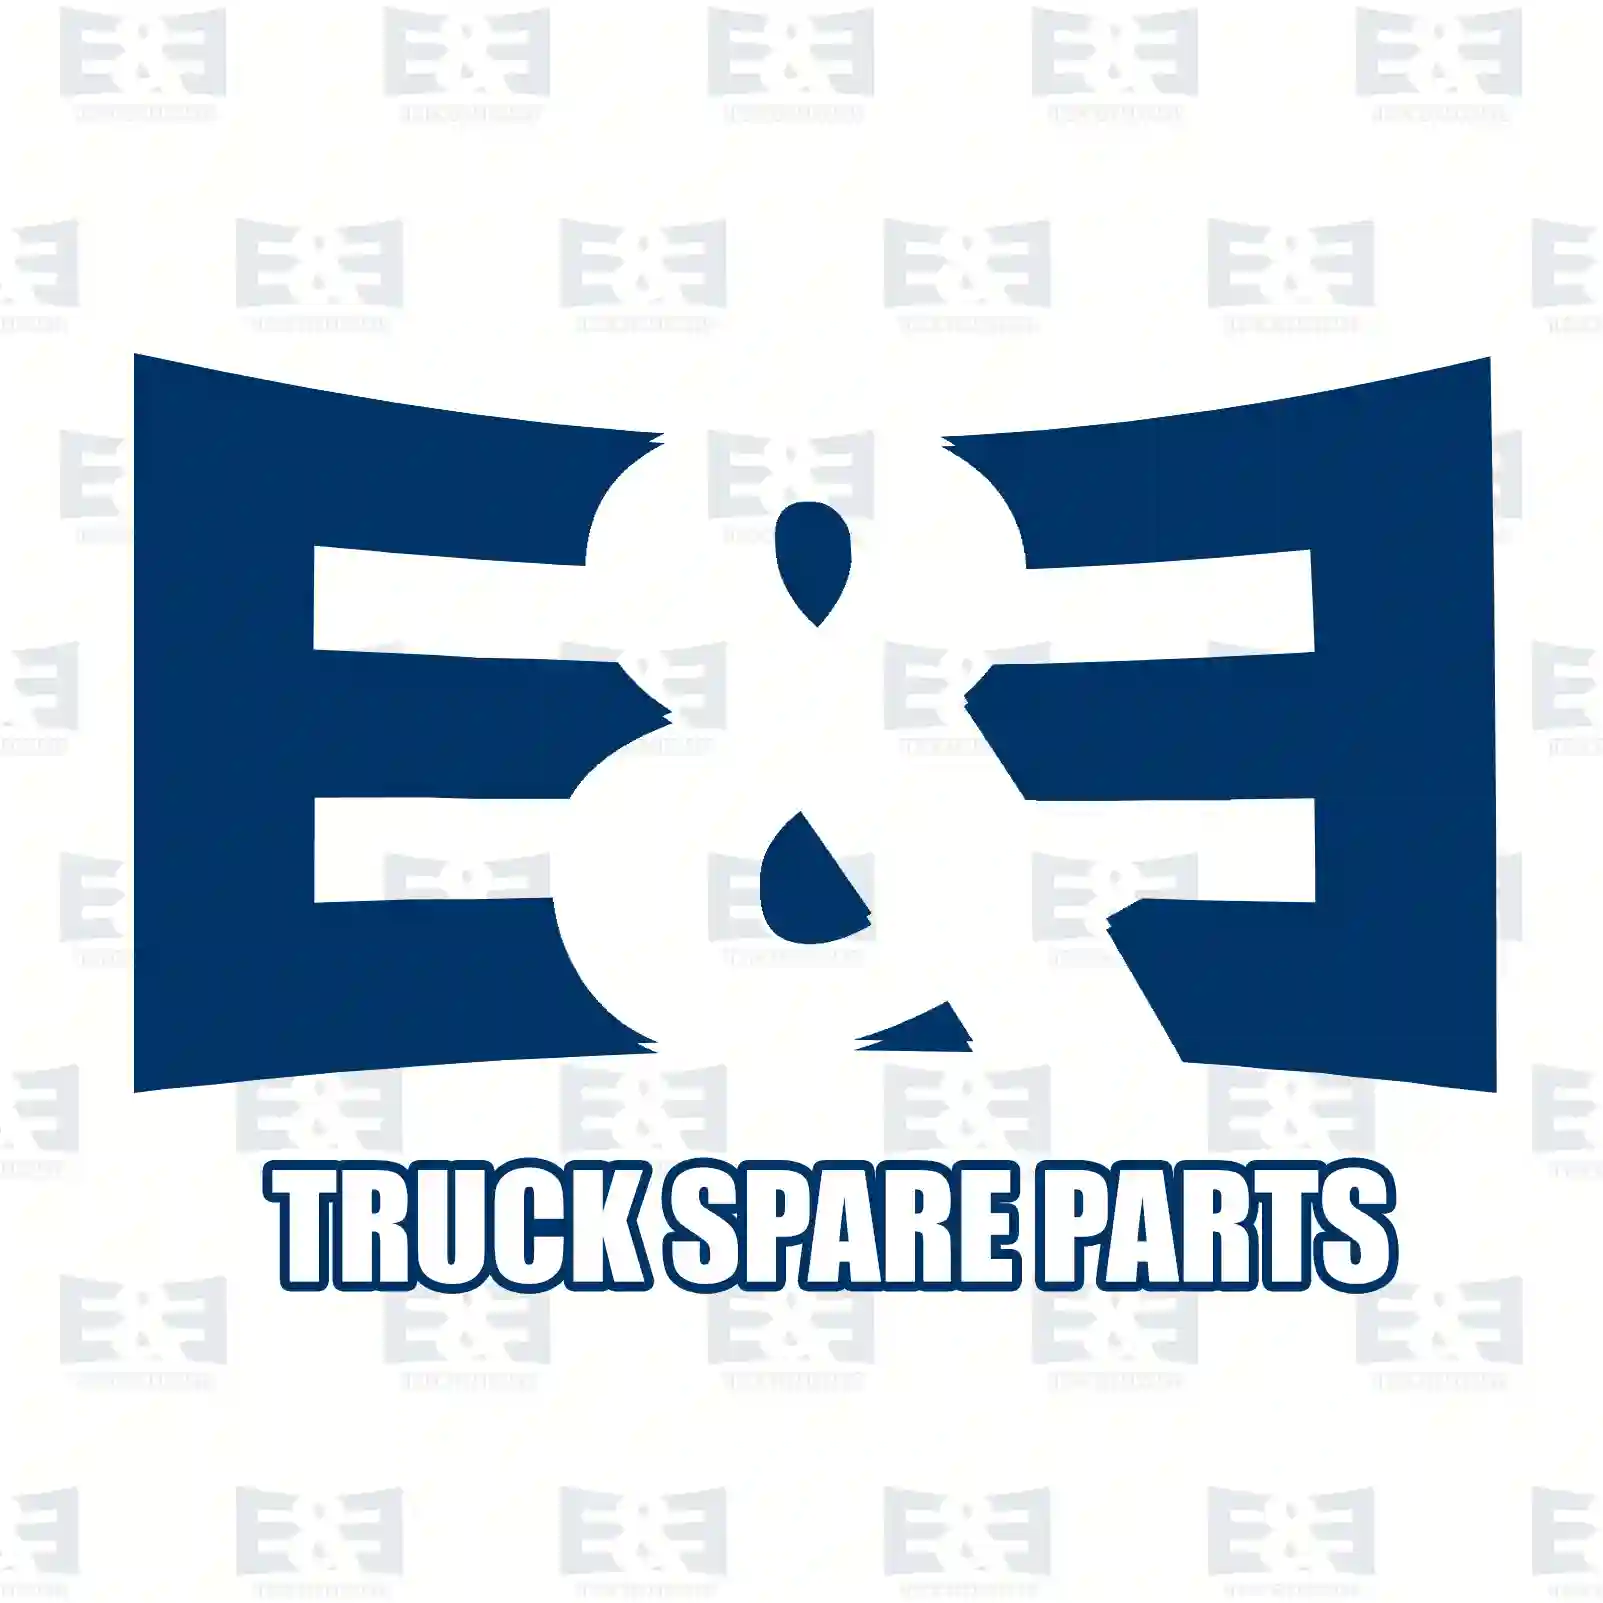  4 Circuit Protection Valve 4-circuit-protection valve, EE No 2E2296887 ,  oem no:64521516001, 81521516095, 81521516098, 81521516099, 81521516105, 81521516106, 81521519095, 81525156105, 2V5607359, ZG50041-0008 E&E Truck Spare Parts | Truck Spare Parts, Auotomotive Spare Parts